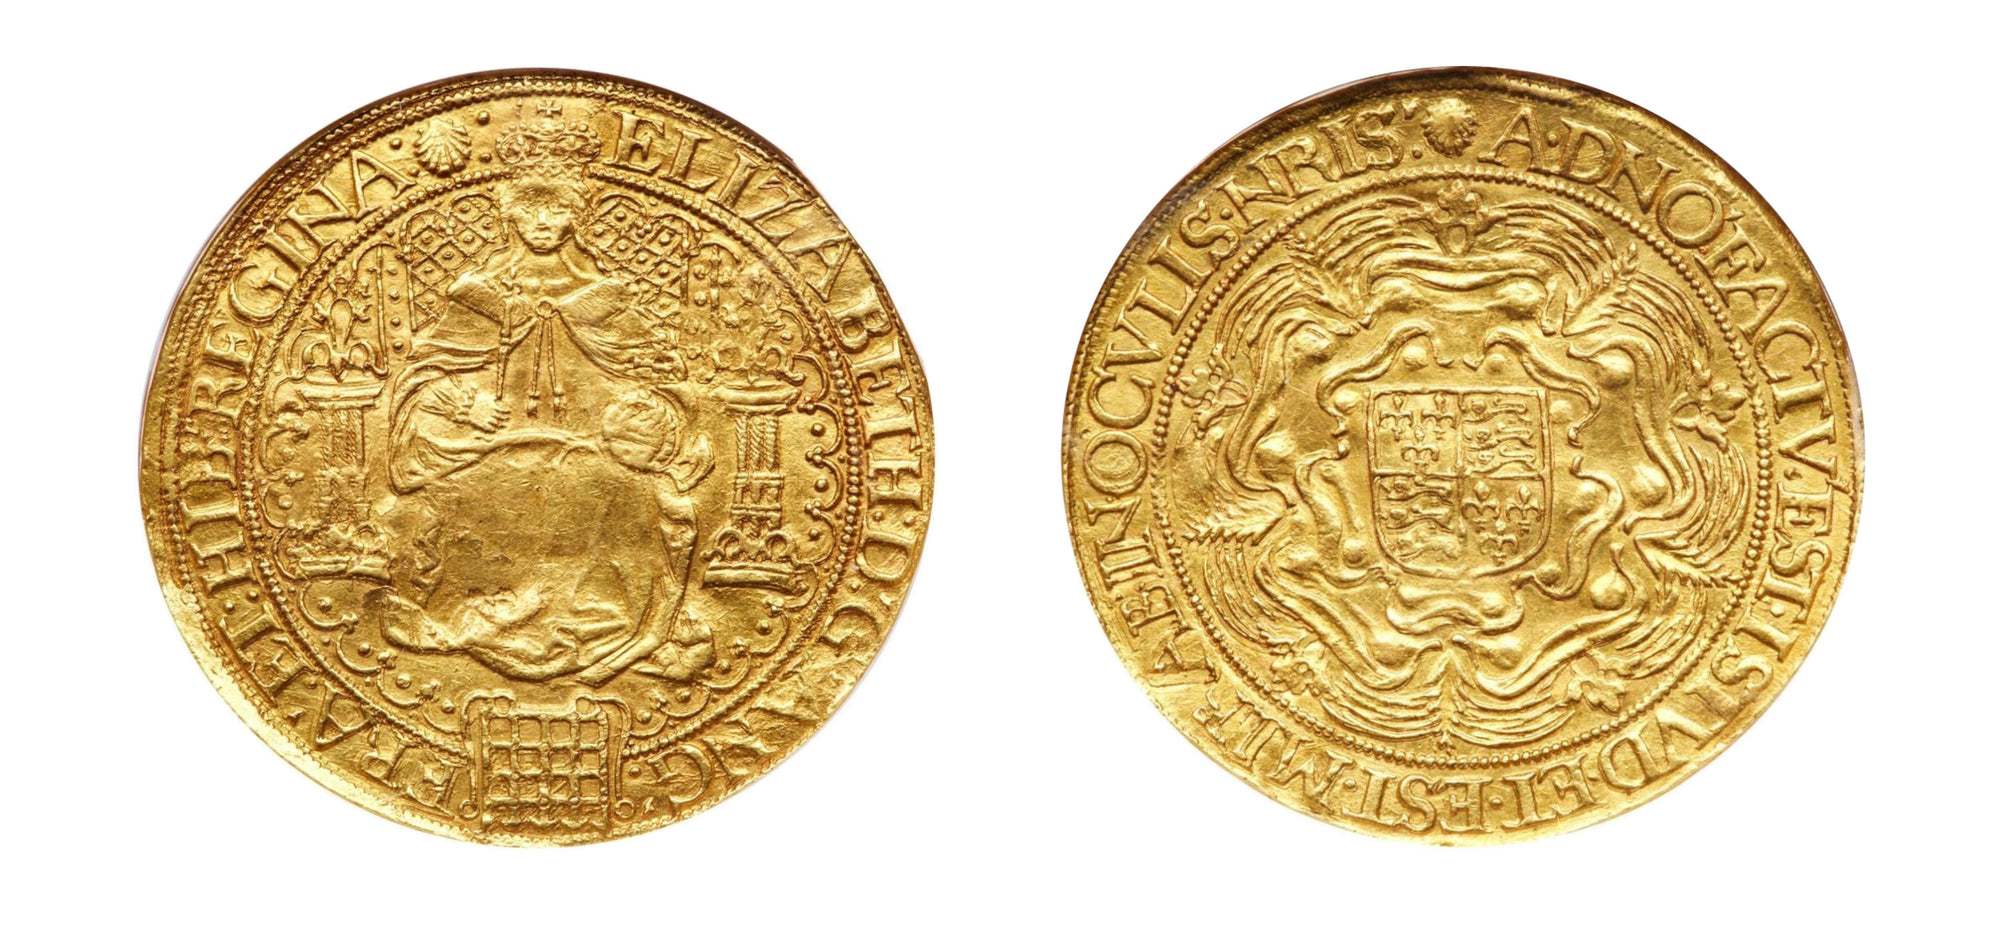 1584-1586 Gold Sovereign Queen Elizabeth I NGC AU55 - Hard Asset Management, Inc